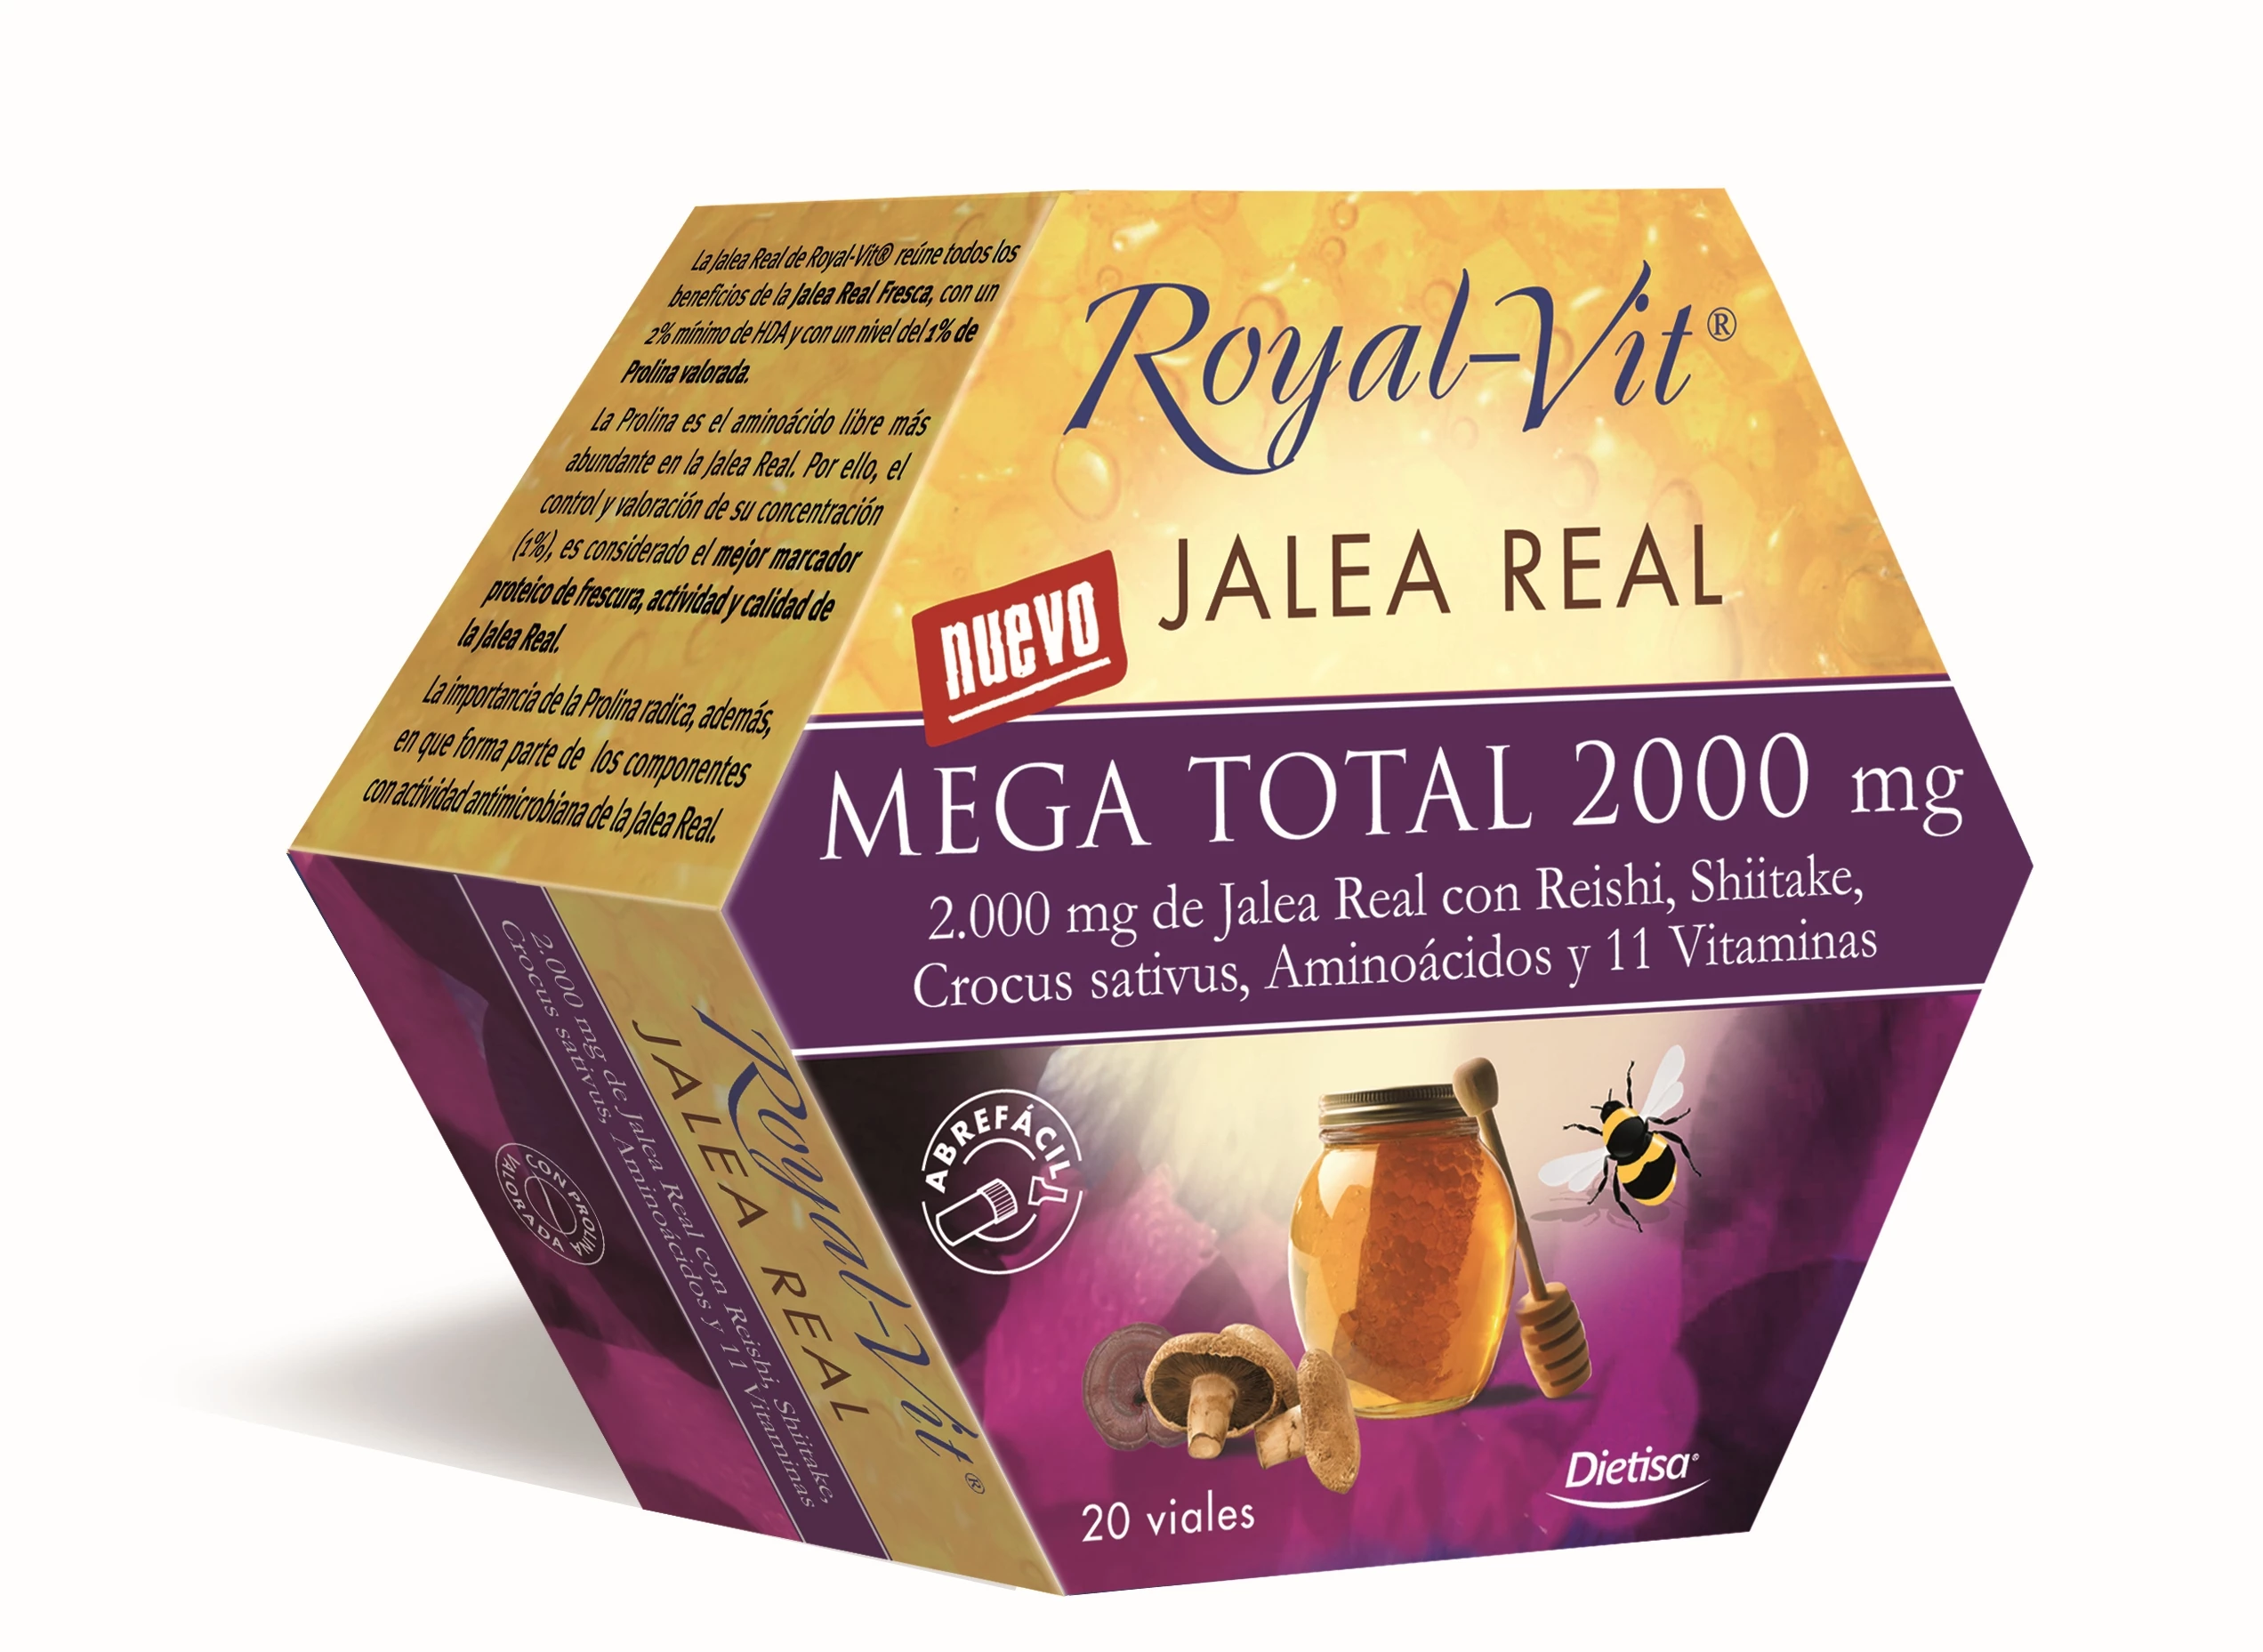 Royal Vit Jalea Real Mega Total 2000mg, 20 Viales. Energía y salud. 